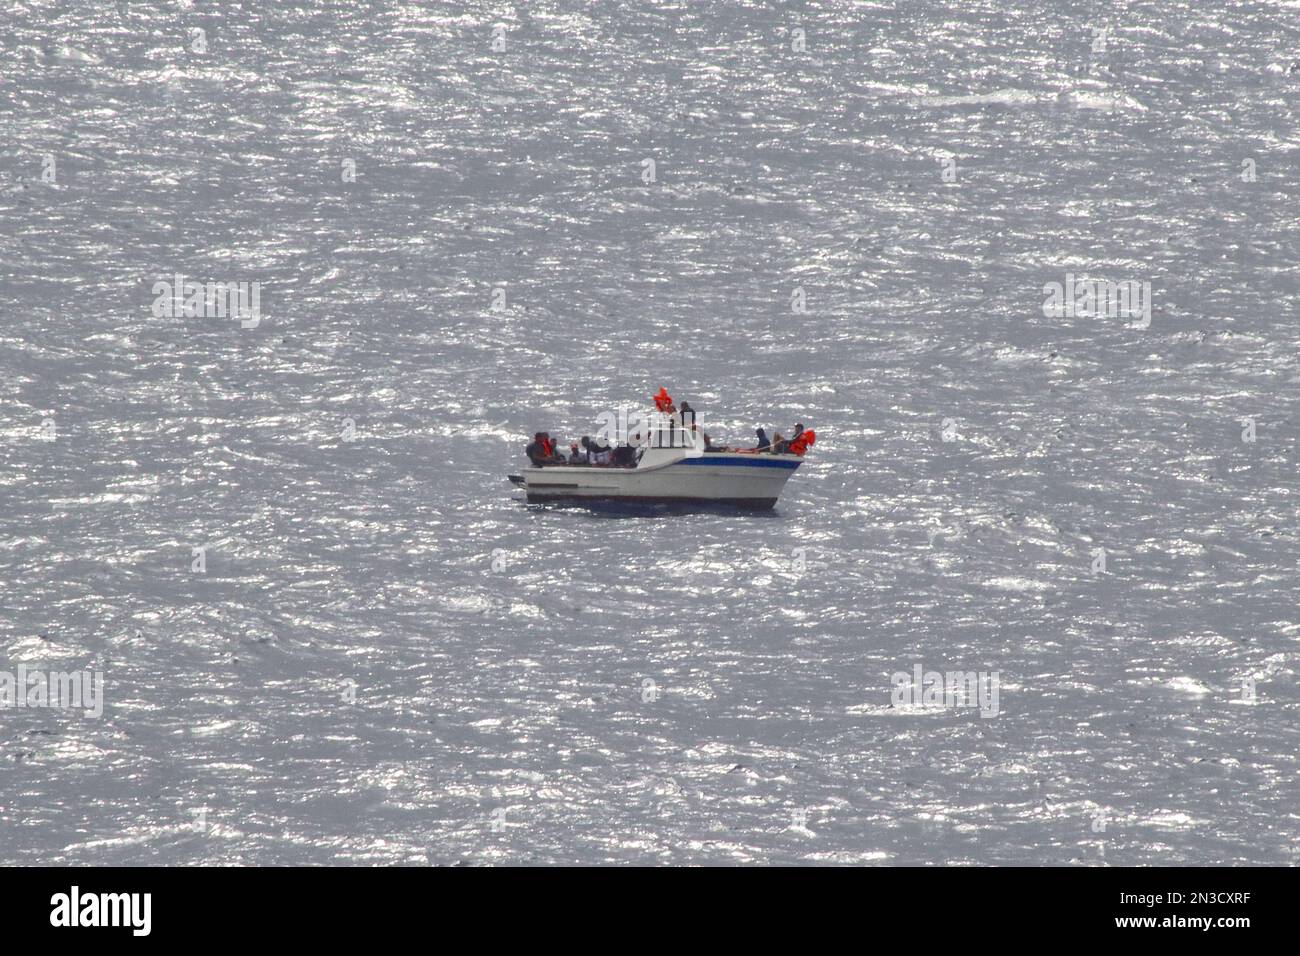 23 mâles algériens déshydratés, maroonés ayant perdu de l'énergie sur leur bateau alors qu'il dévie dans la mer Méditerranée, à 100 milles de la terre, août 2022. Banque D'Images